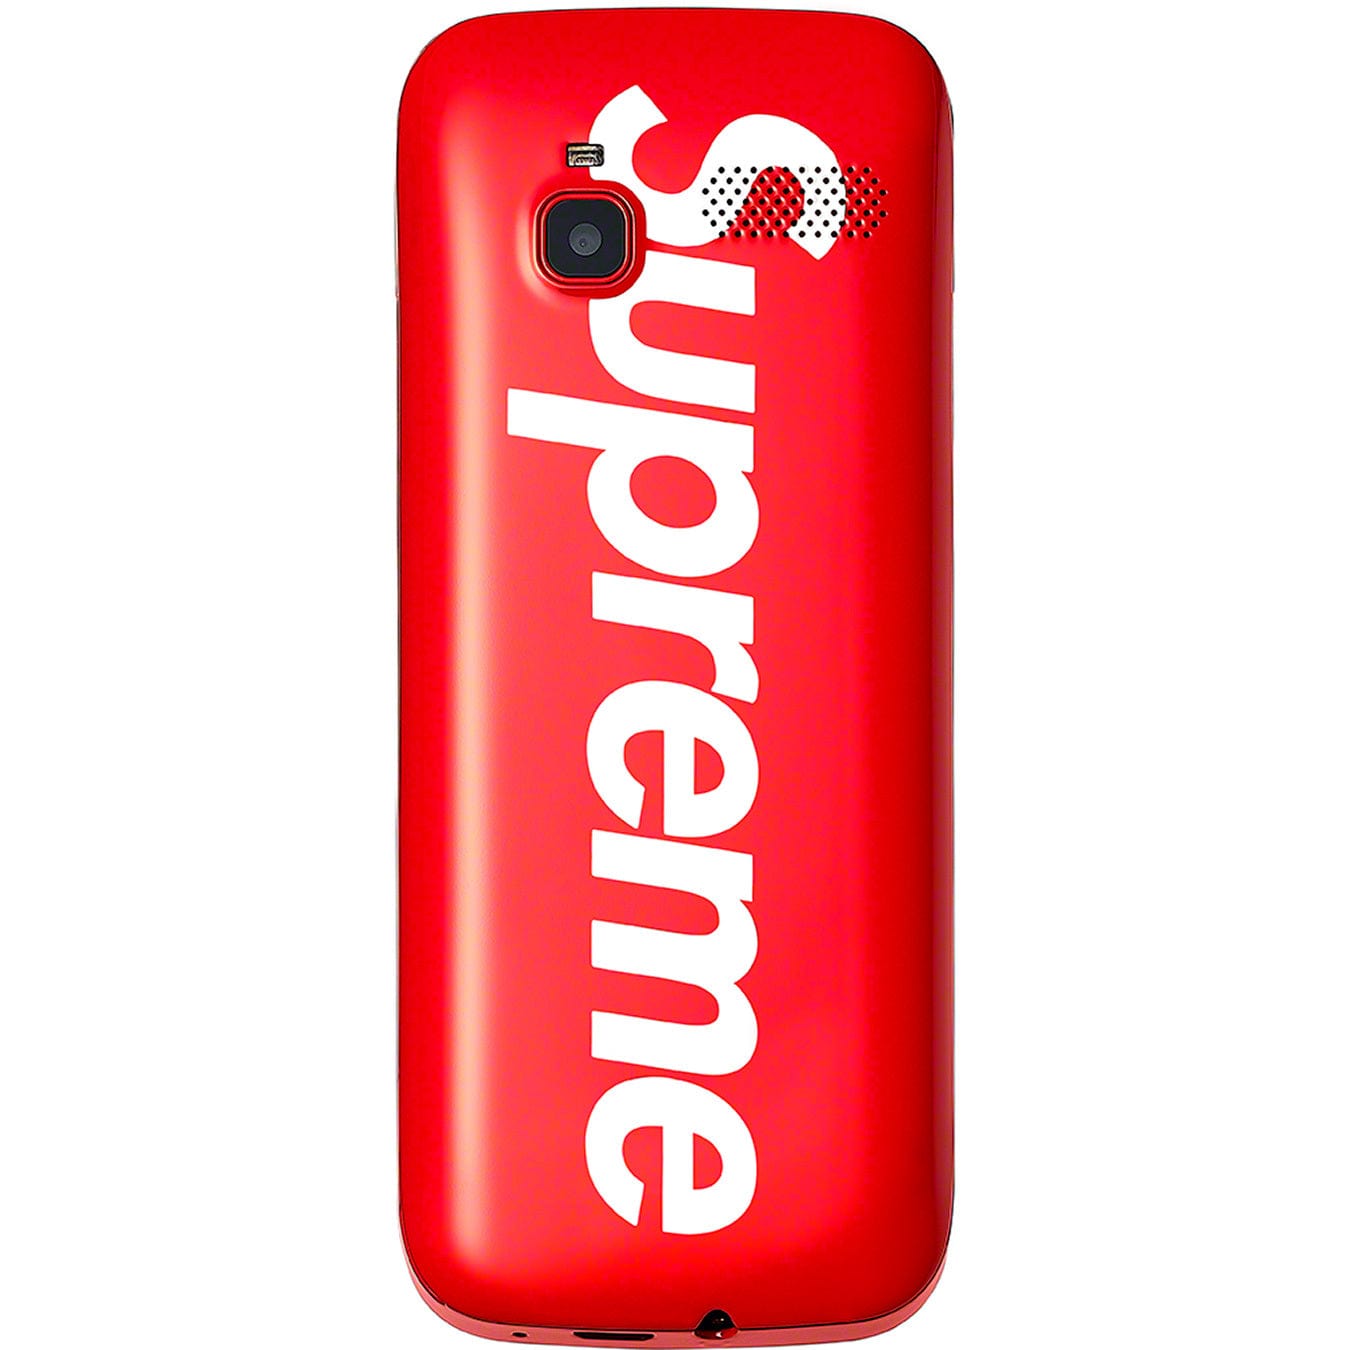 SUPREME ACCESSORIES SUPREME BLU SMARTPHONE RED